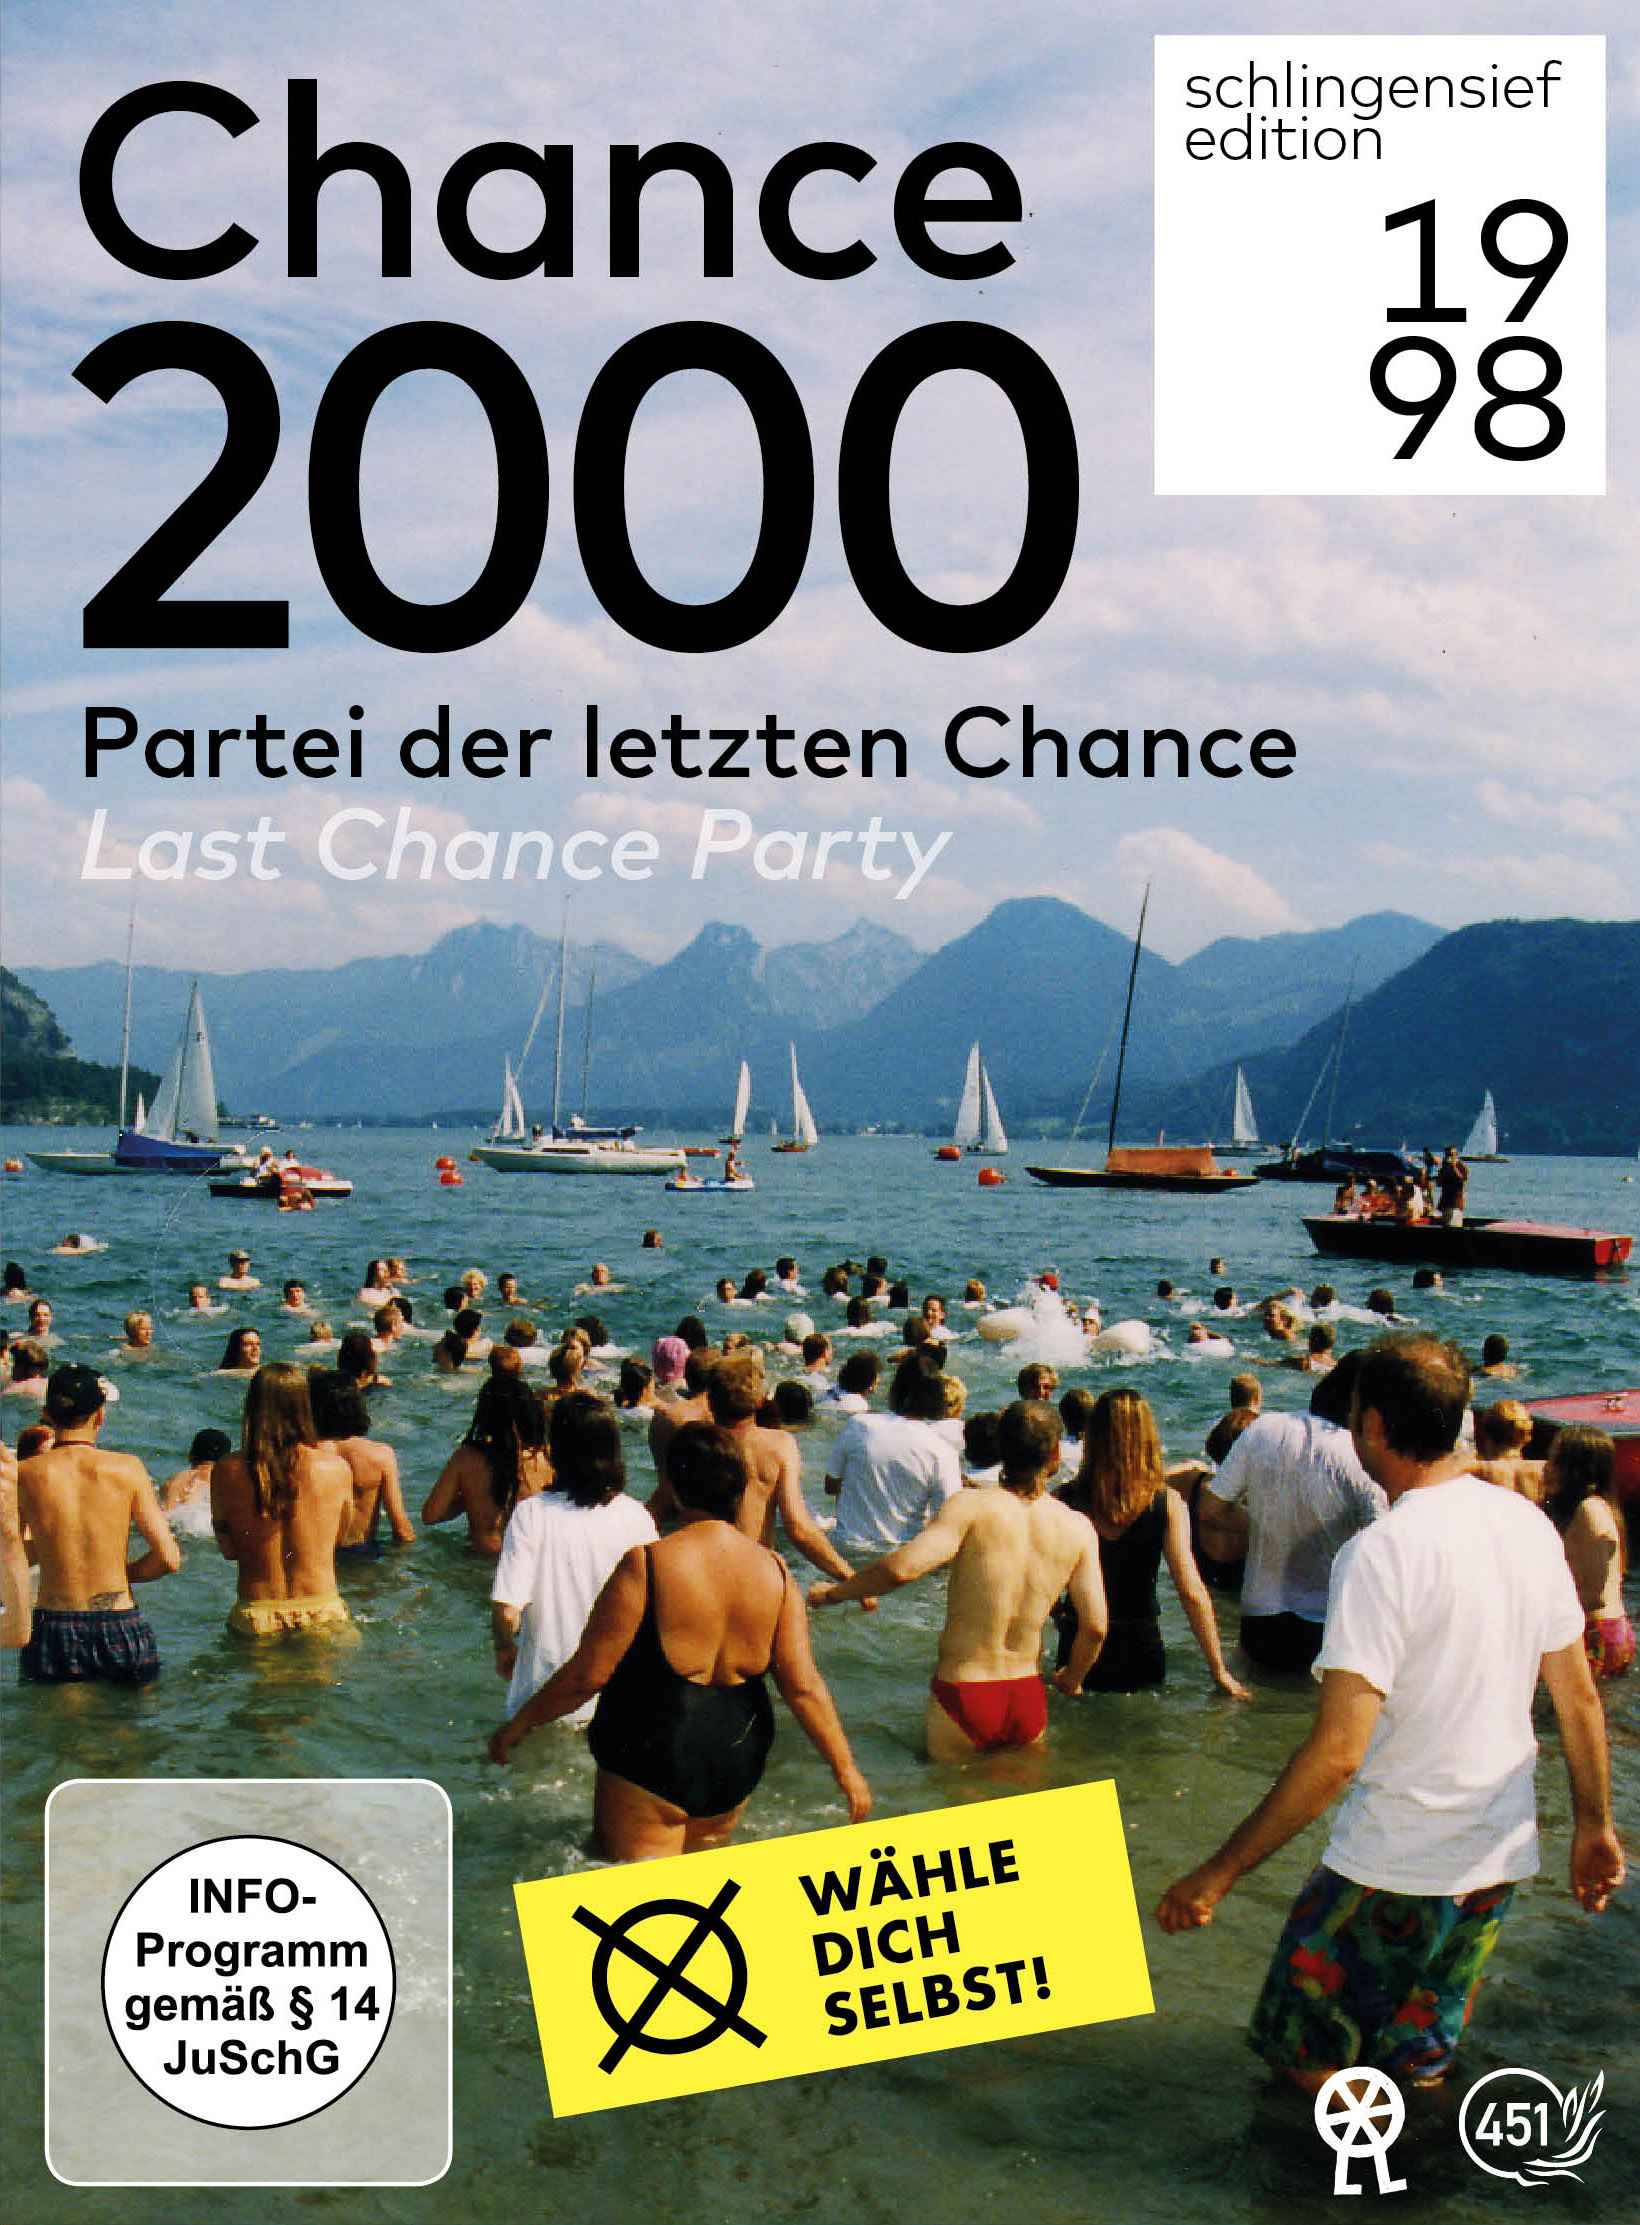 Chance 2000 - Partei DVD letzten Chance der